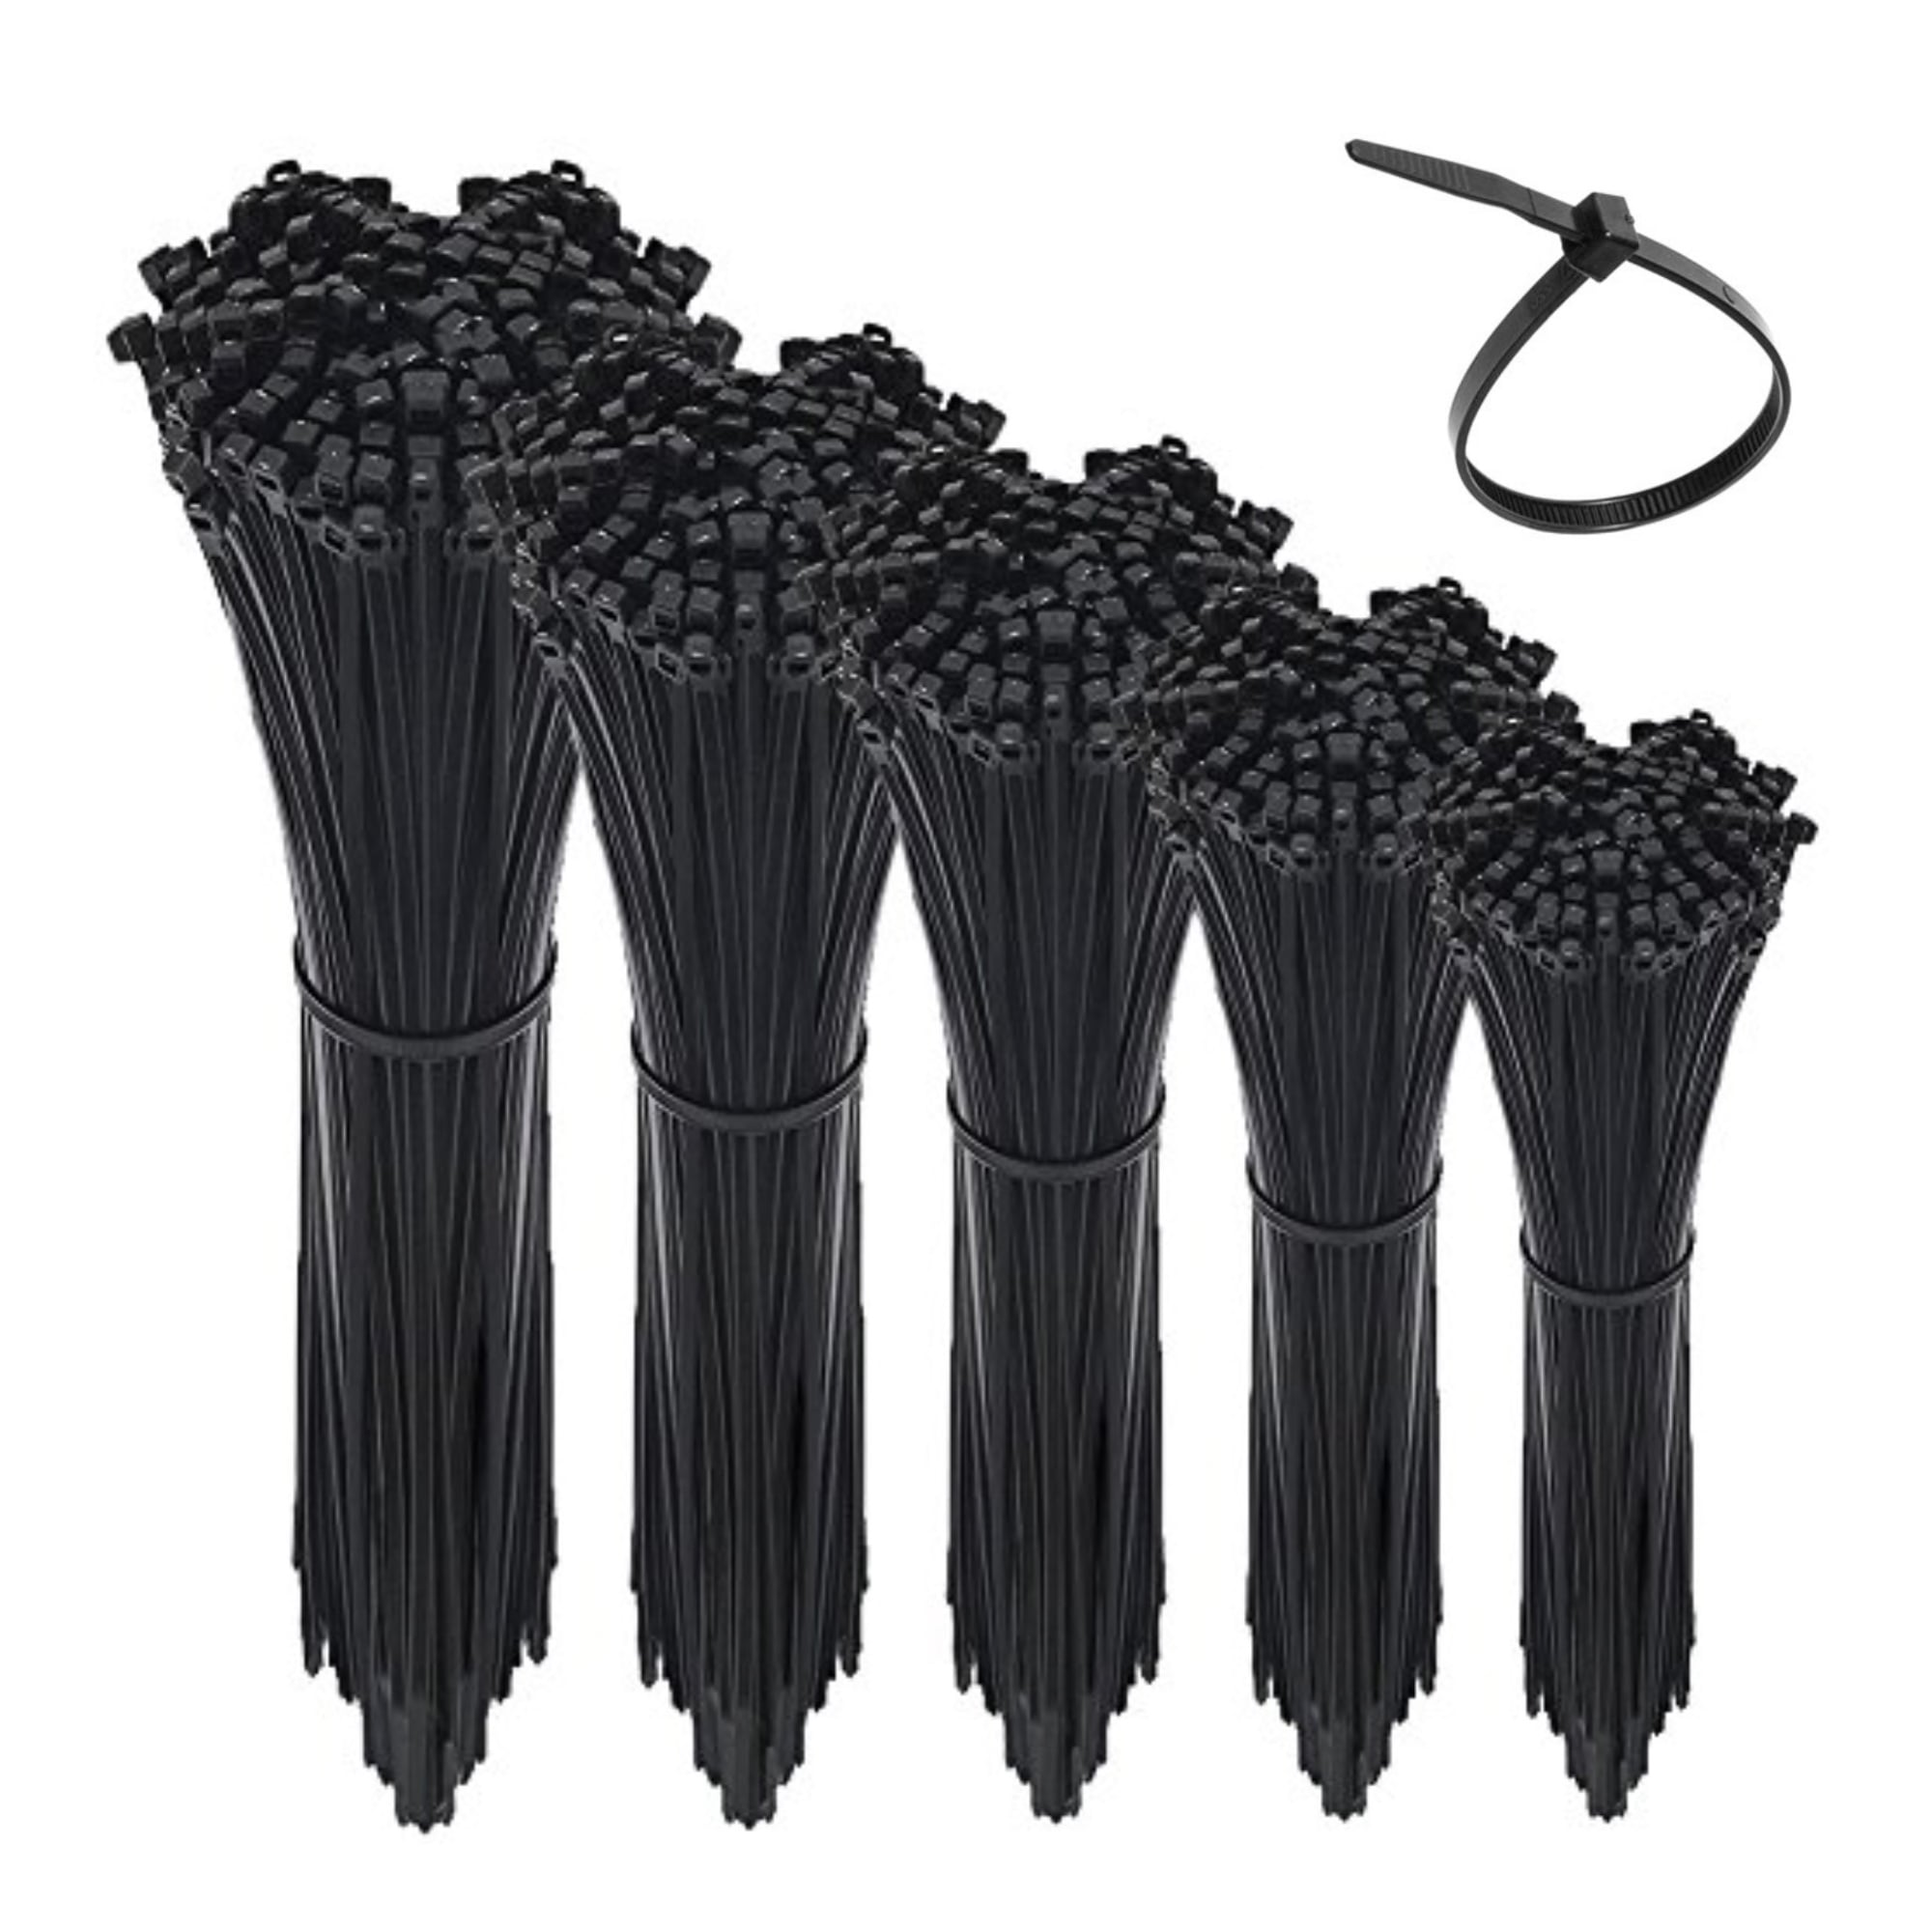 100pcs Cable Zip Ties 7.6mm x 370mm Black Nylon UV Stabilised - Stanley  Packaging